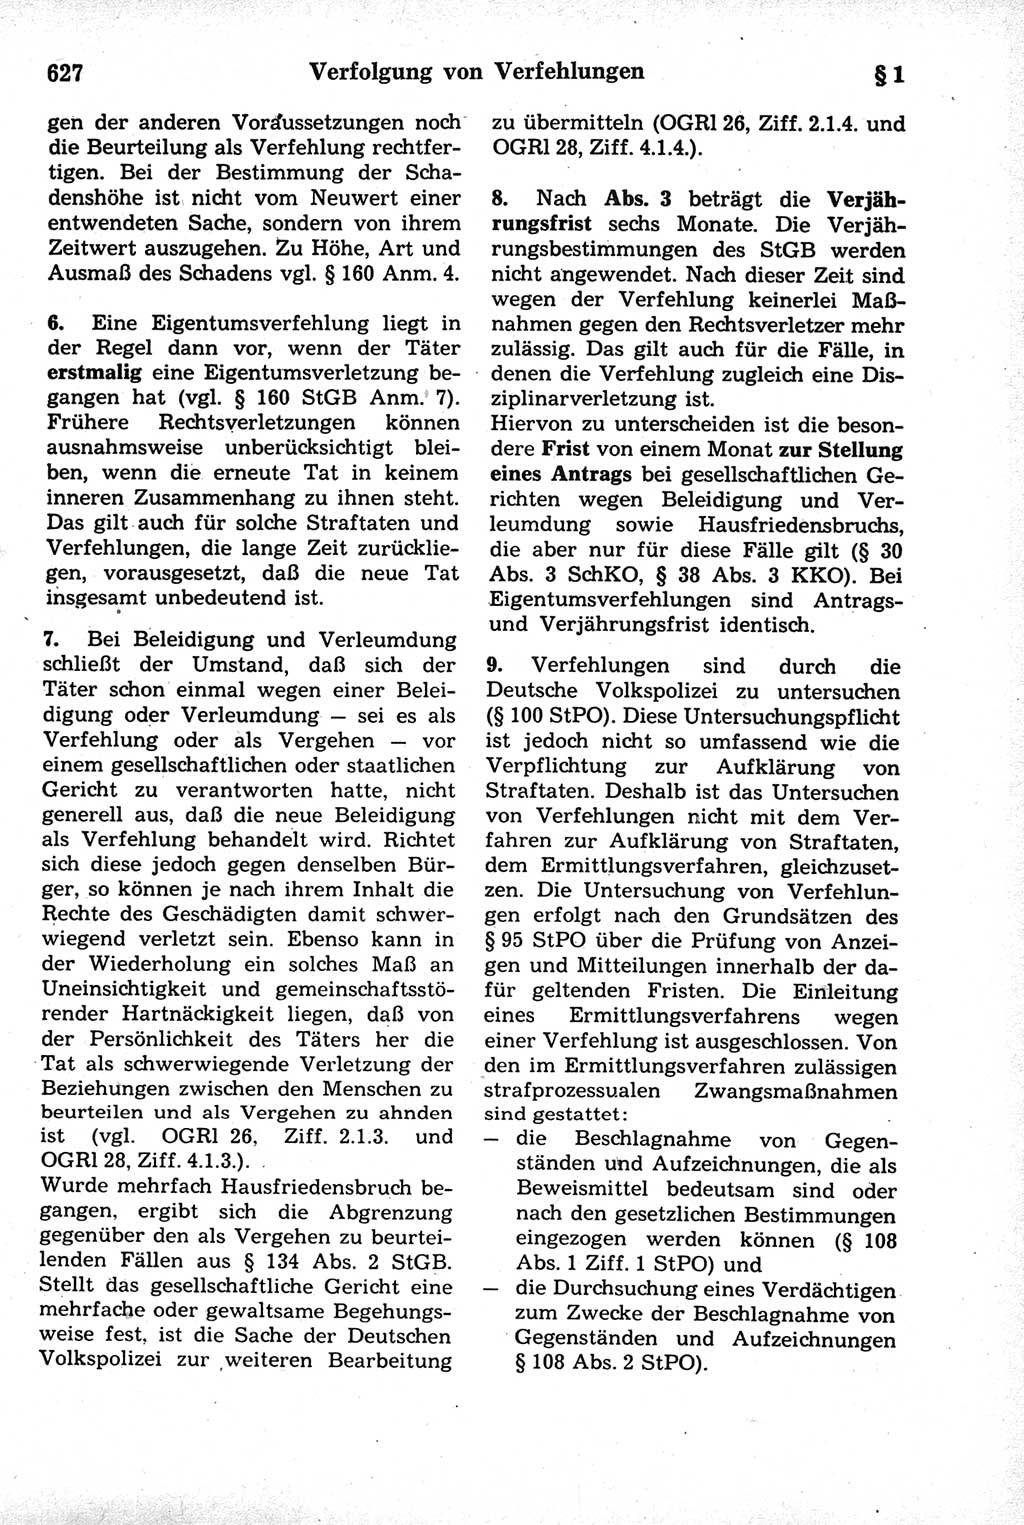 Strafrecht der Deutschen Demokratischen Republik (DDR), Kommentar zum Strafgesetzbuch (StGB) 1981, Seite 627 (Strafr. DDR Komm. StGB 1981, S. 627)